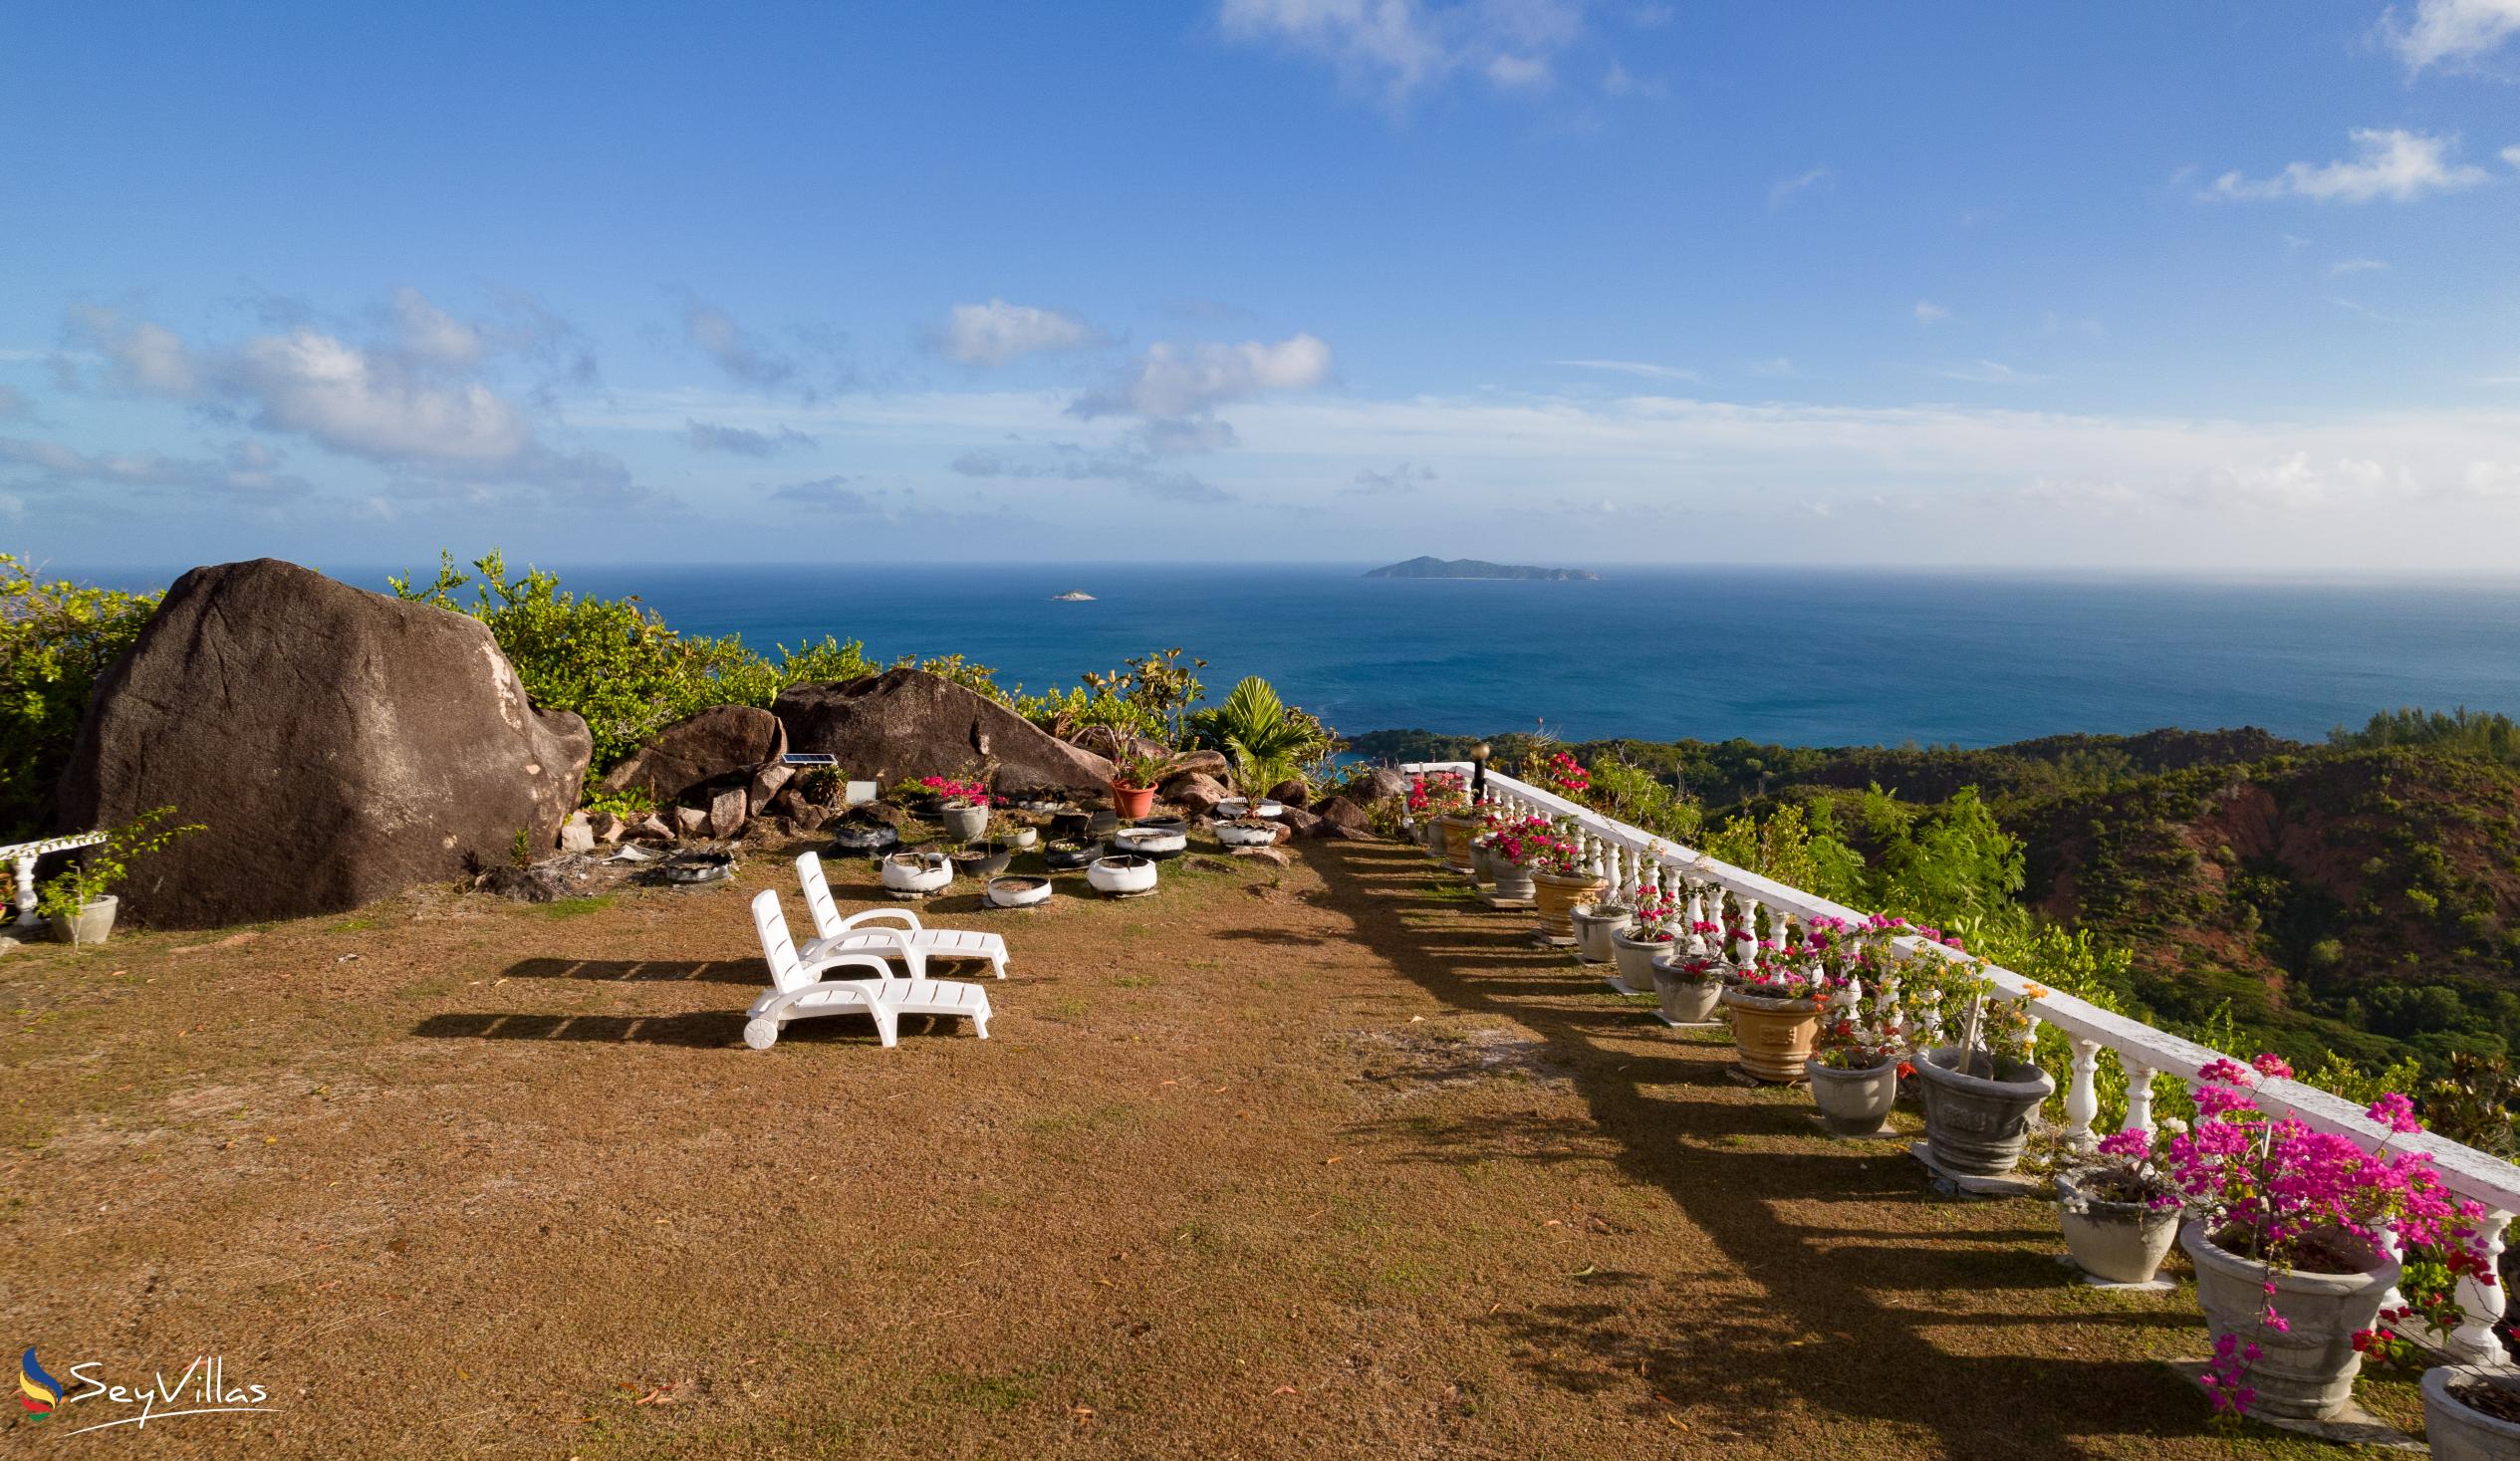 Foto 8: Maison du Soleil - Aussenbereich - Praslin (Seychellen)